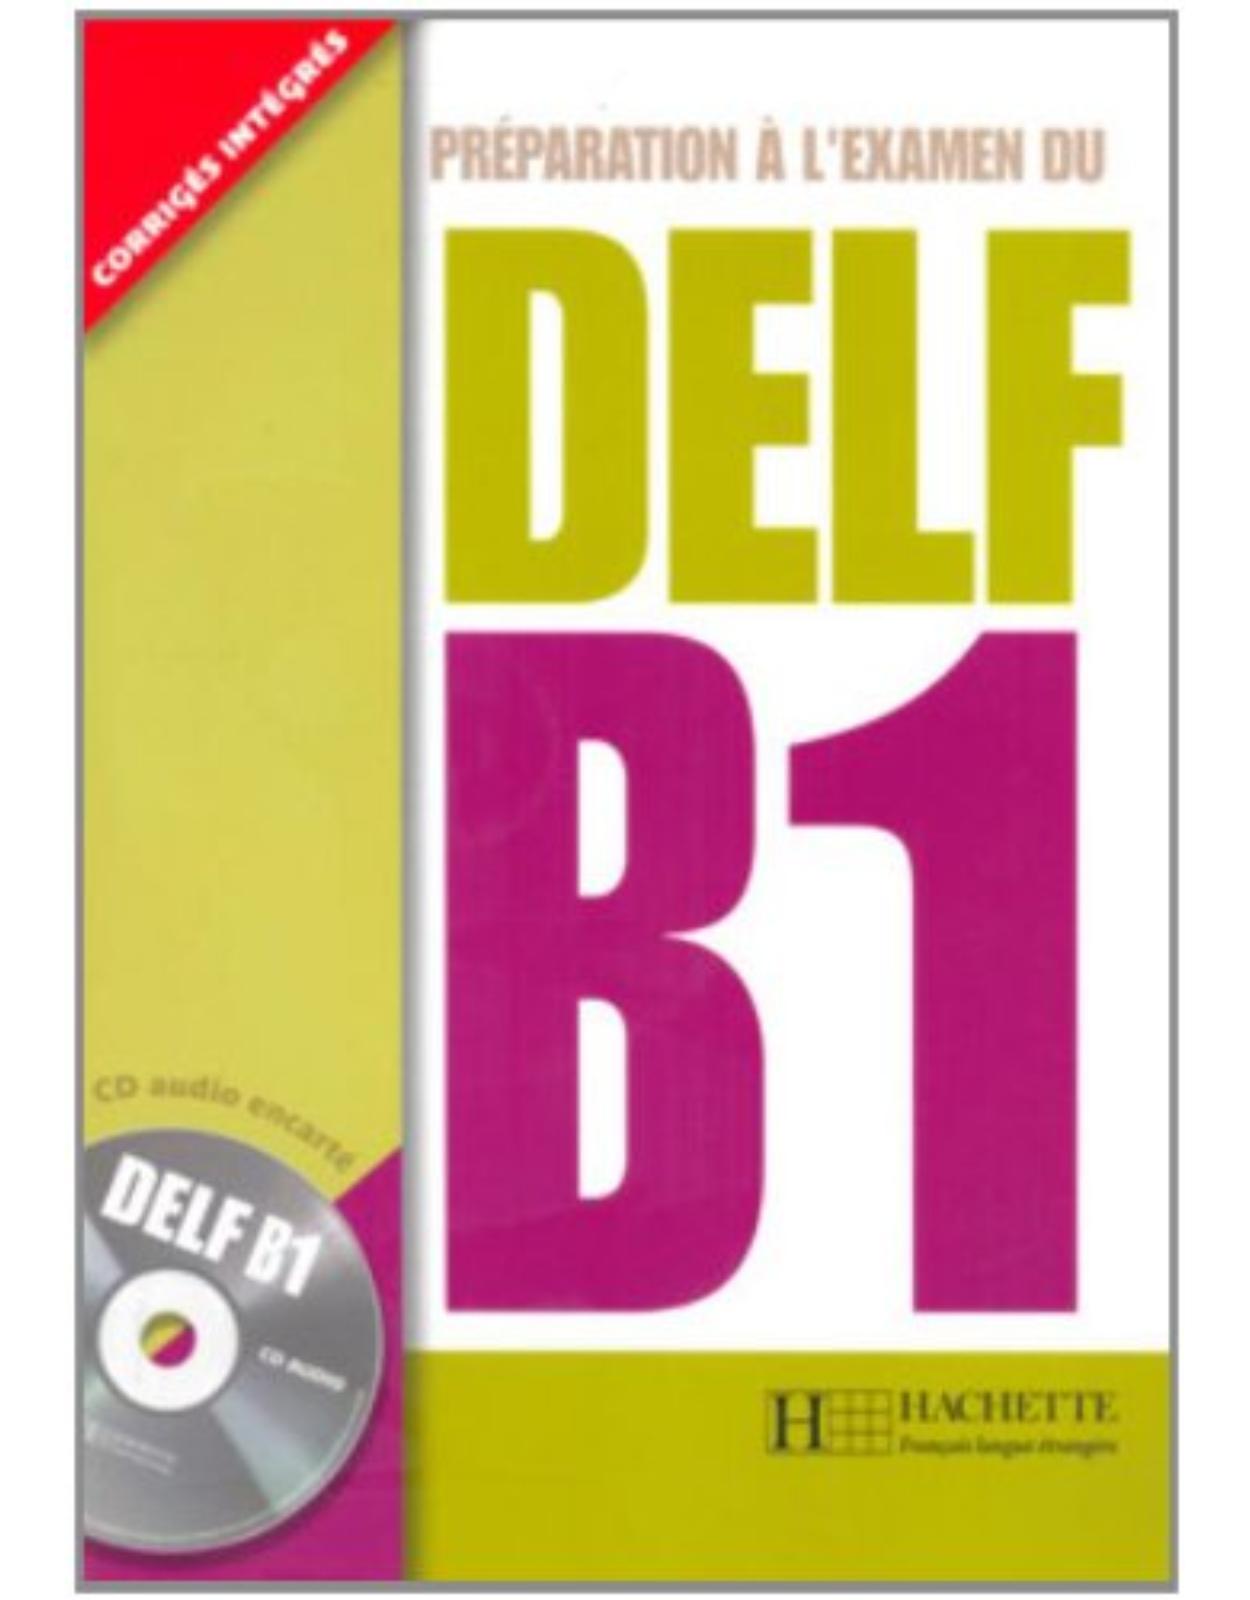 Preparation a l`examen du DELF B1 + CD audio